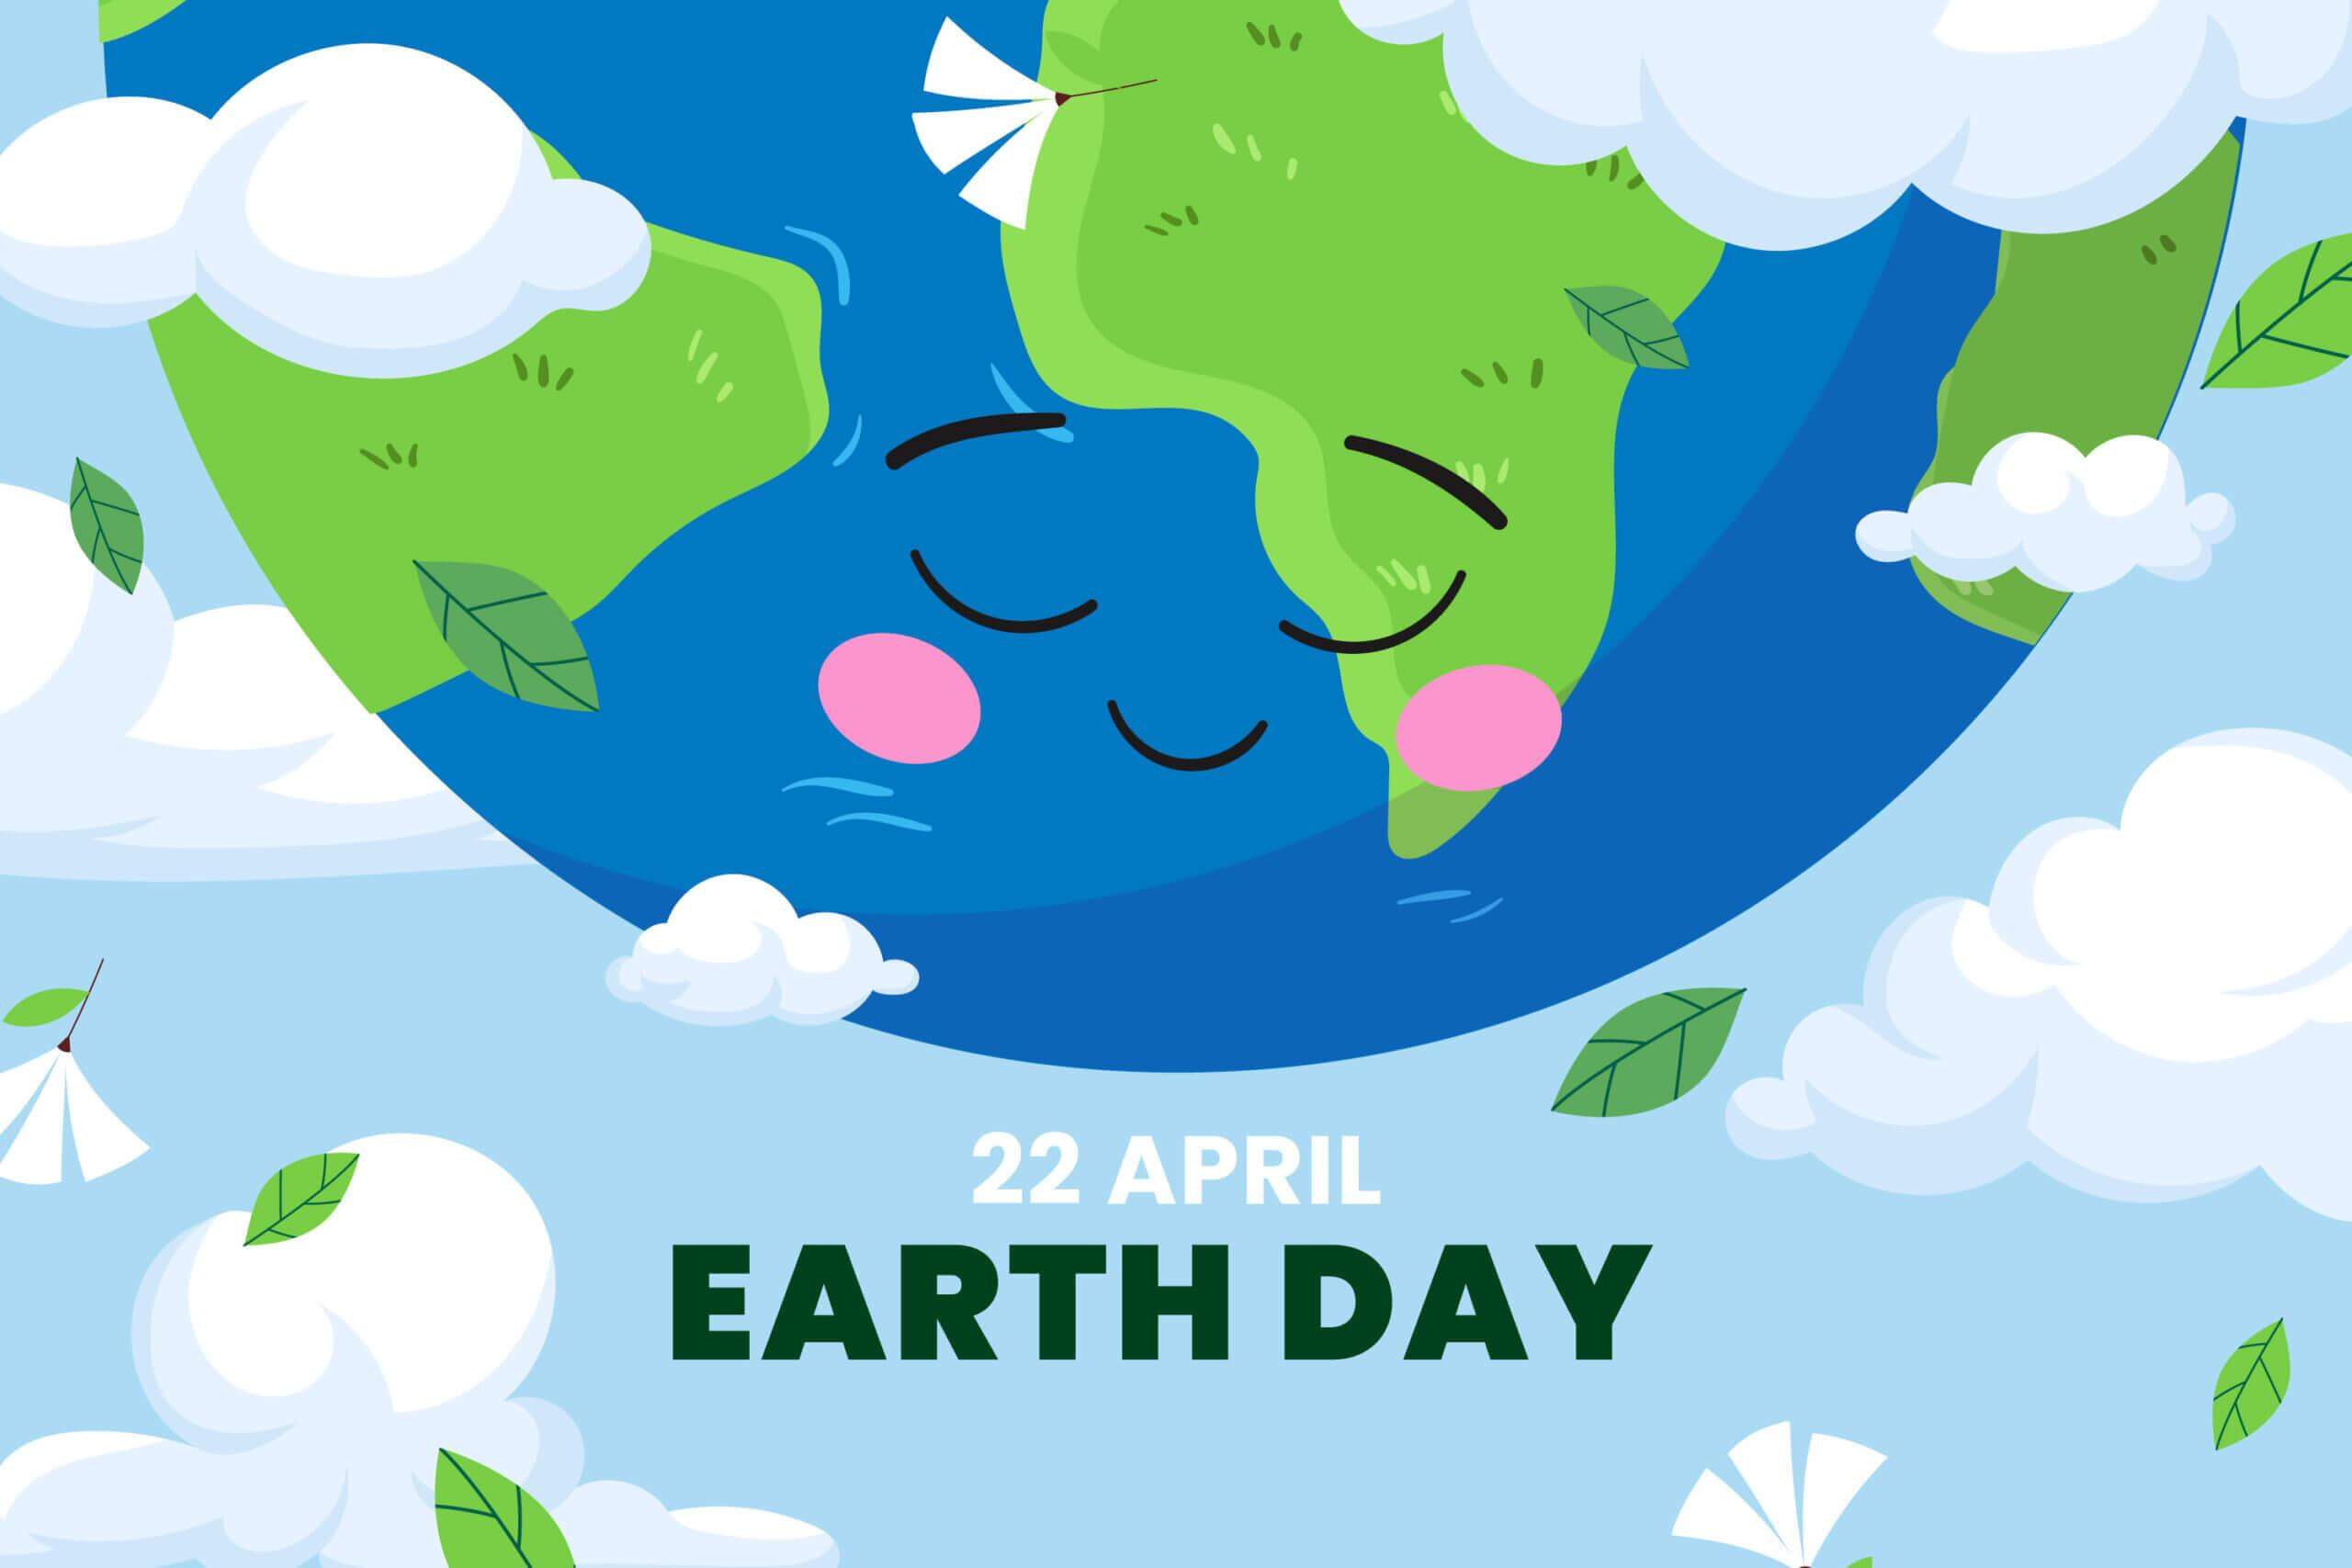 Journée de la Terre - 22 avril - Earth day